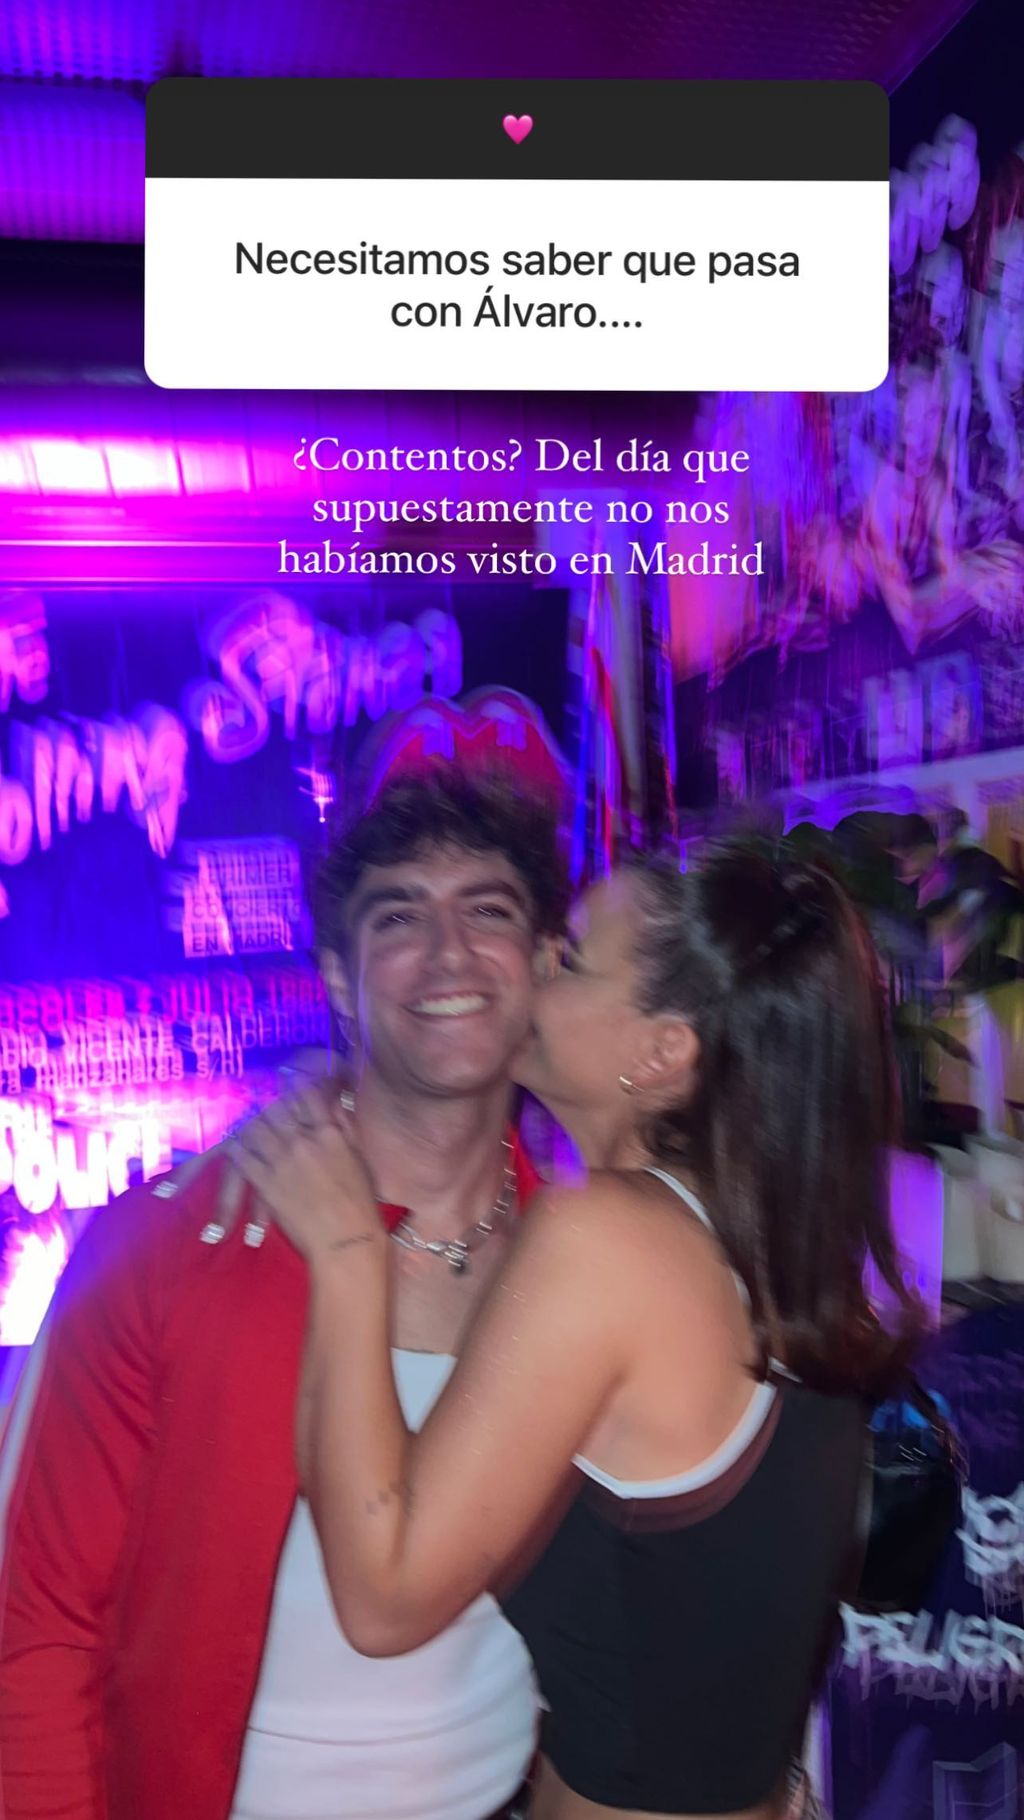 La foto que confirma que Álvaro y Laura sí se vieron en Madrid